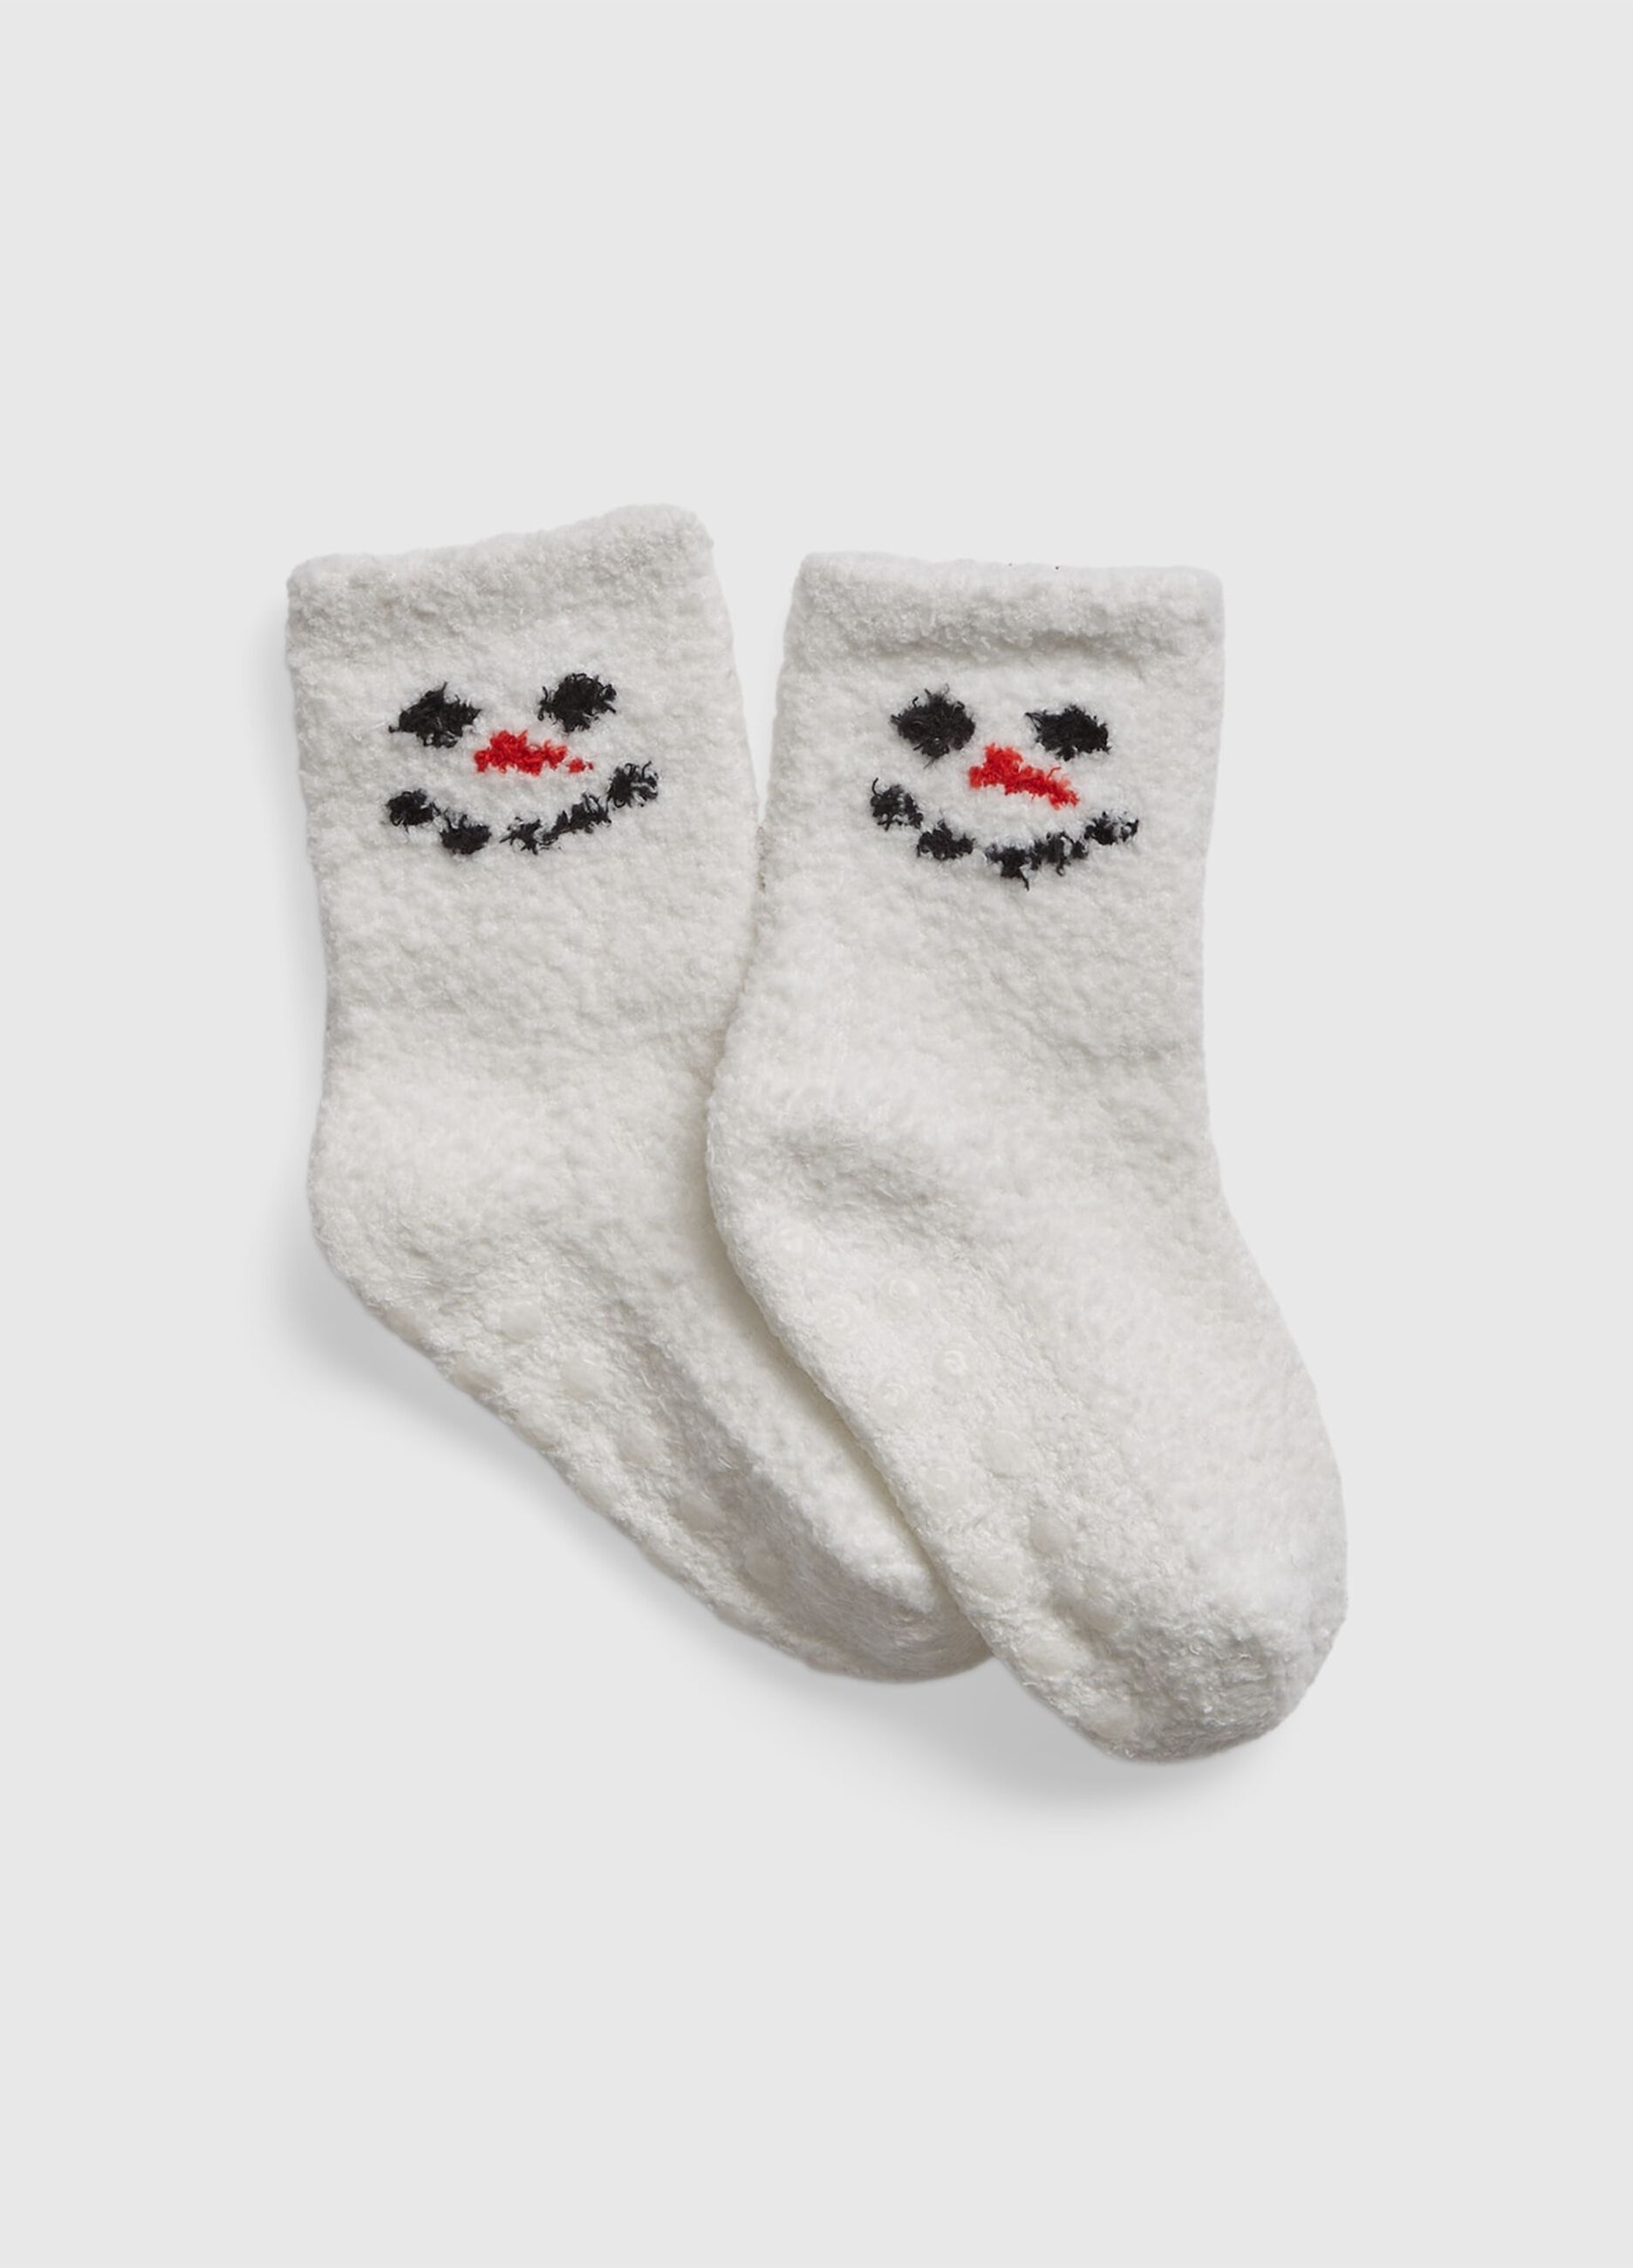 Slipper socks with snowman design